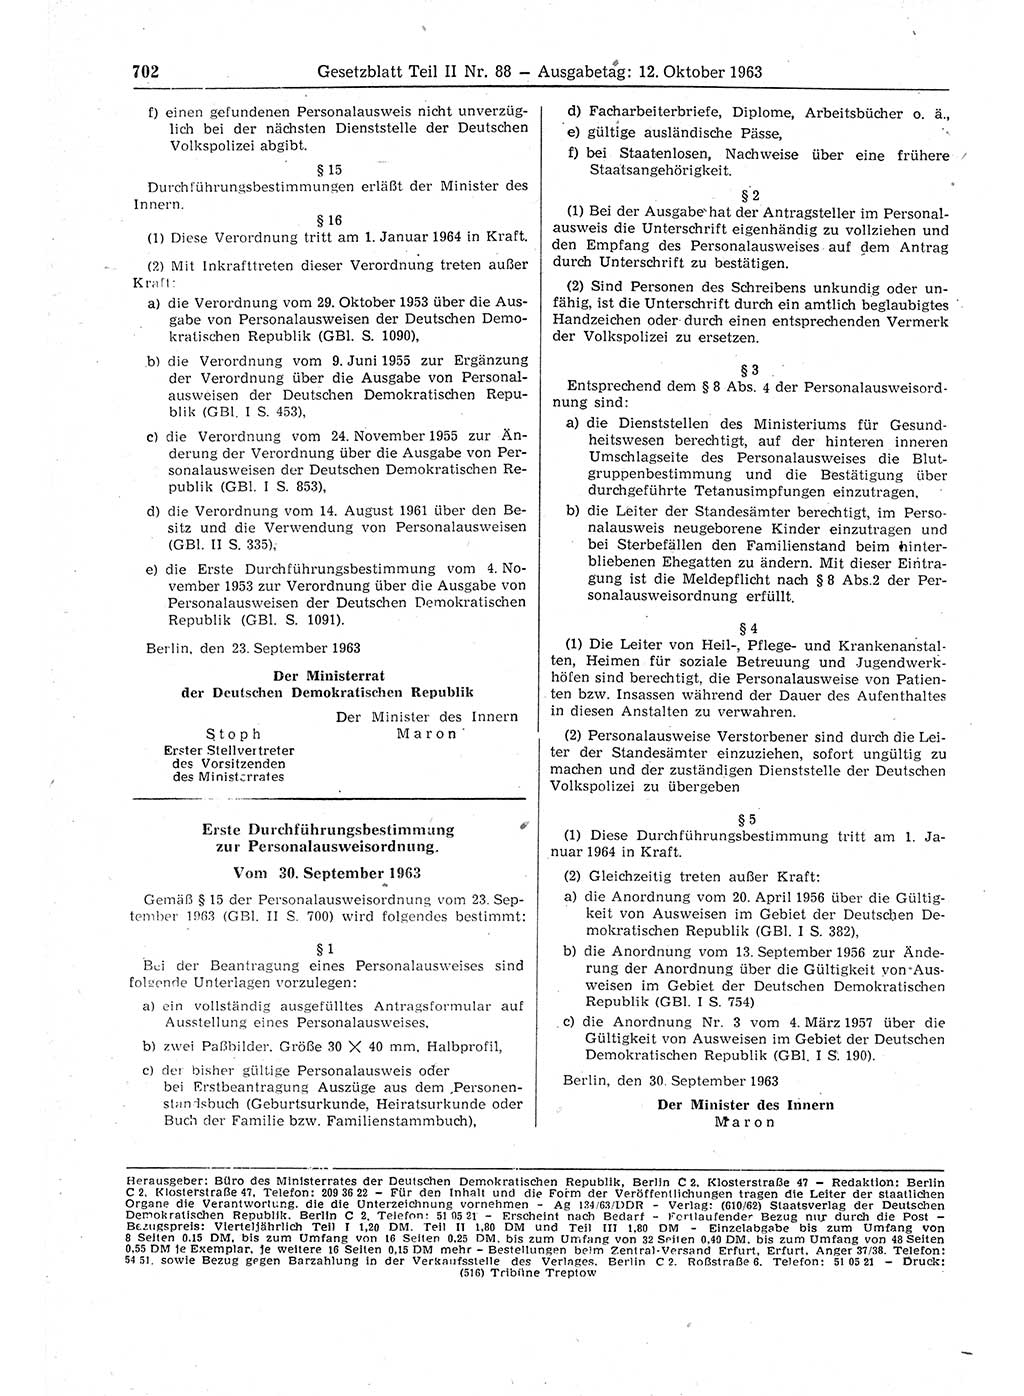 Gesetzblatt (GBl.) der Deutschen Demokratischen Republik (DDR) Teil ⅠⅠ 1963, Seite 702 (GBl. DDR ⅠⅠ 1963, S. 702)